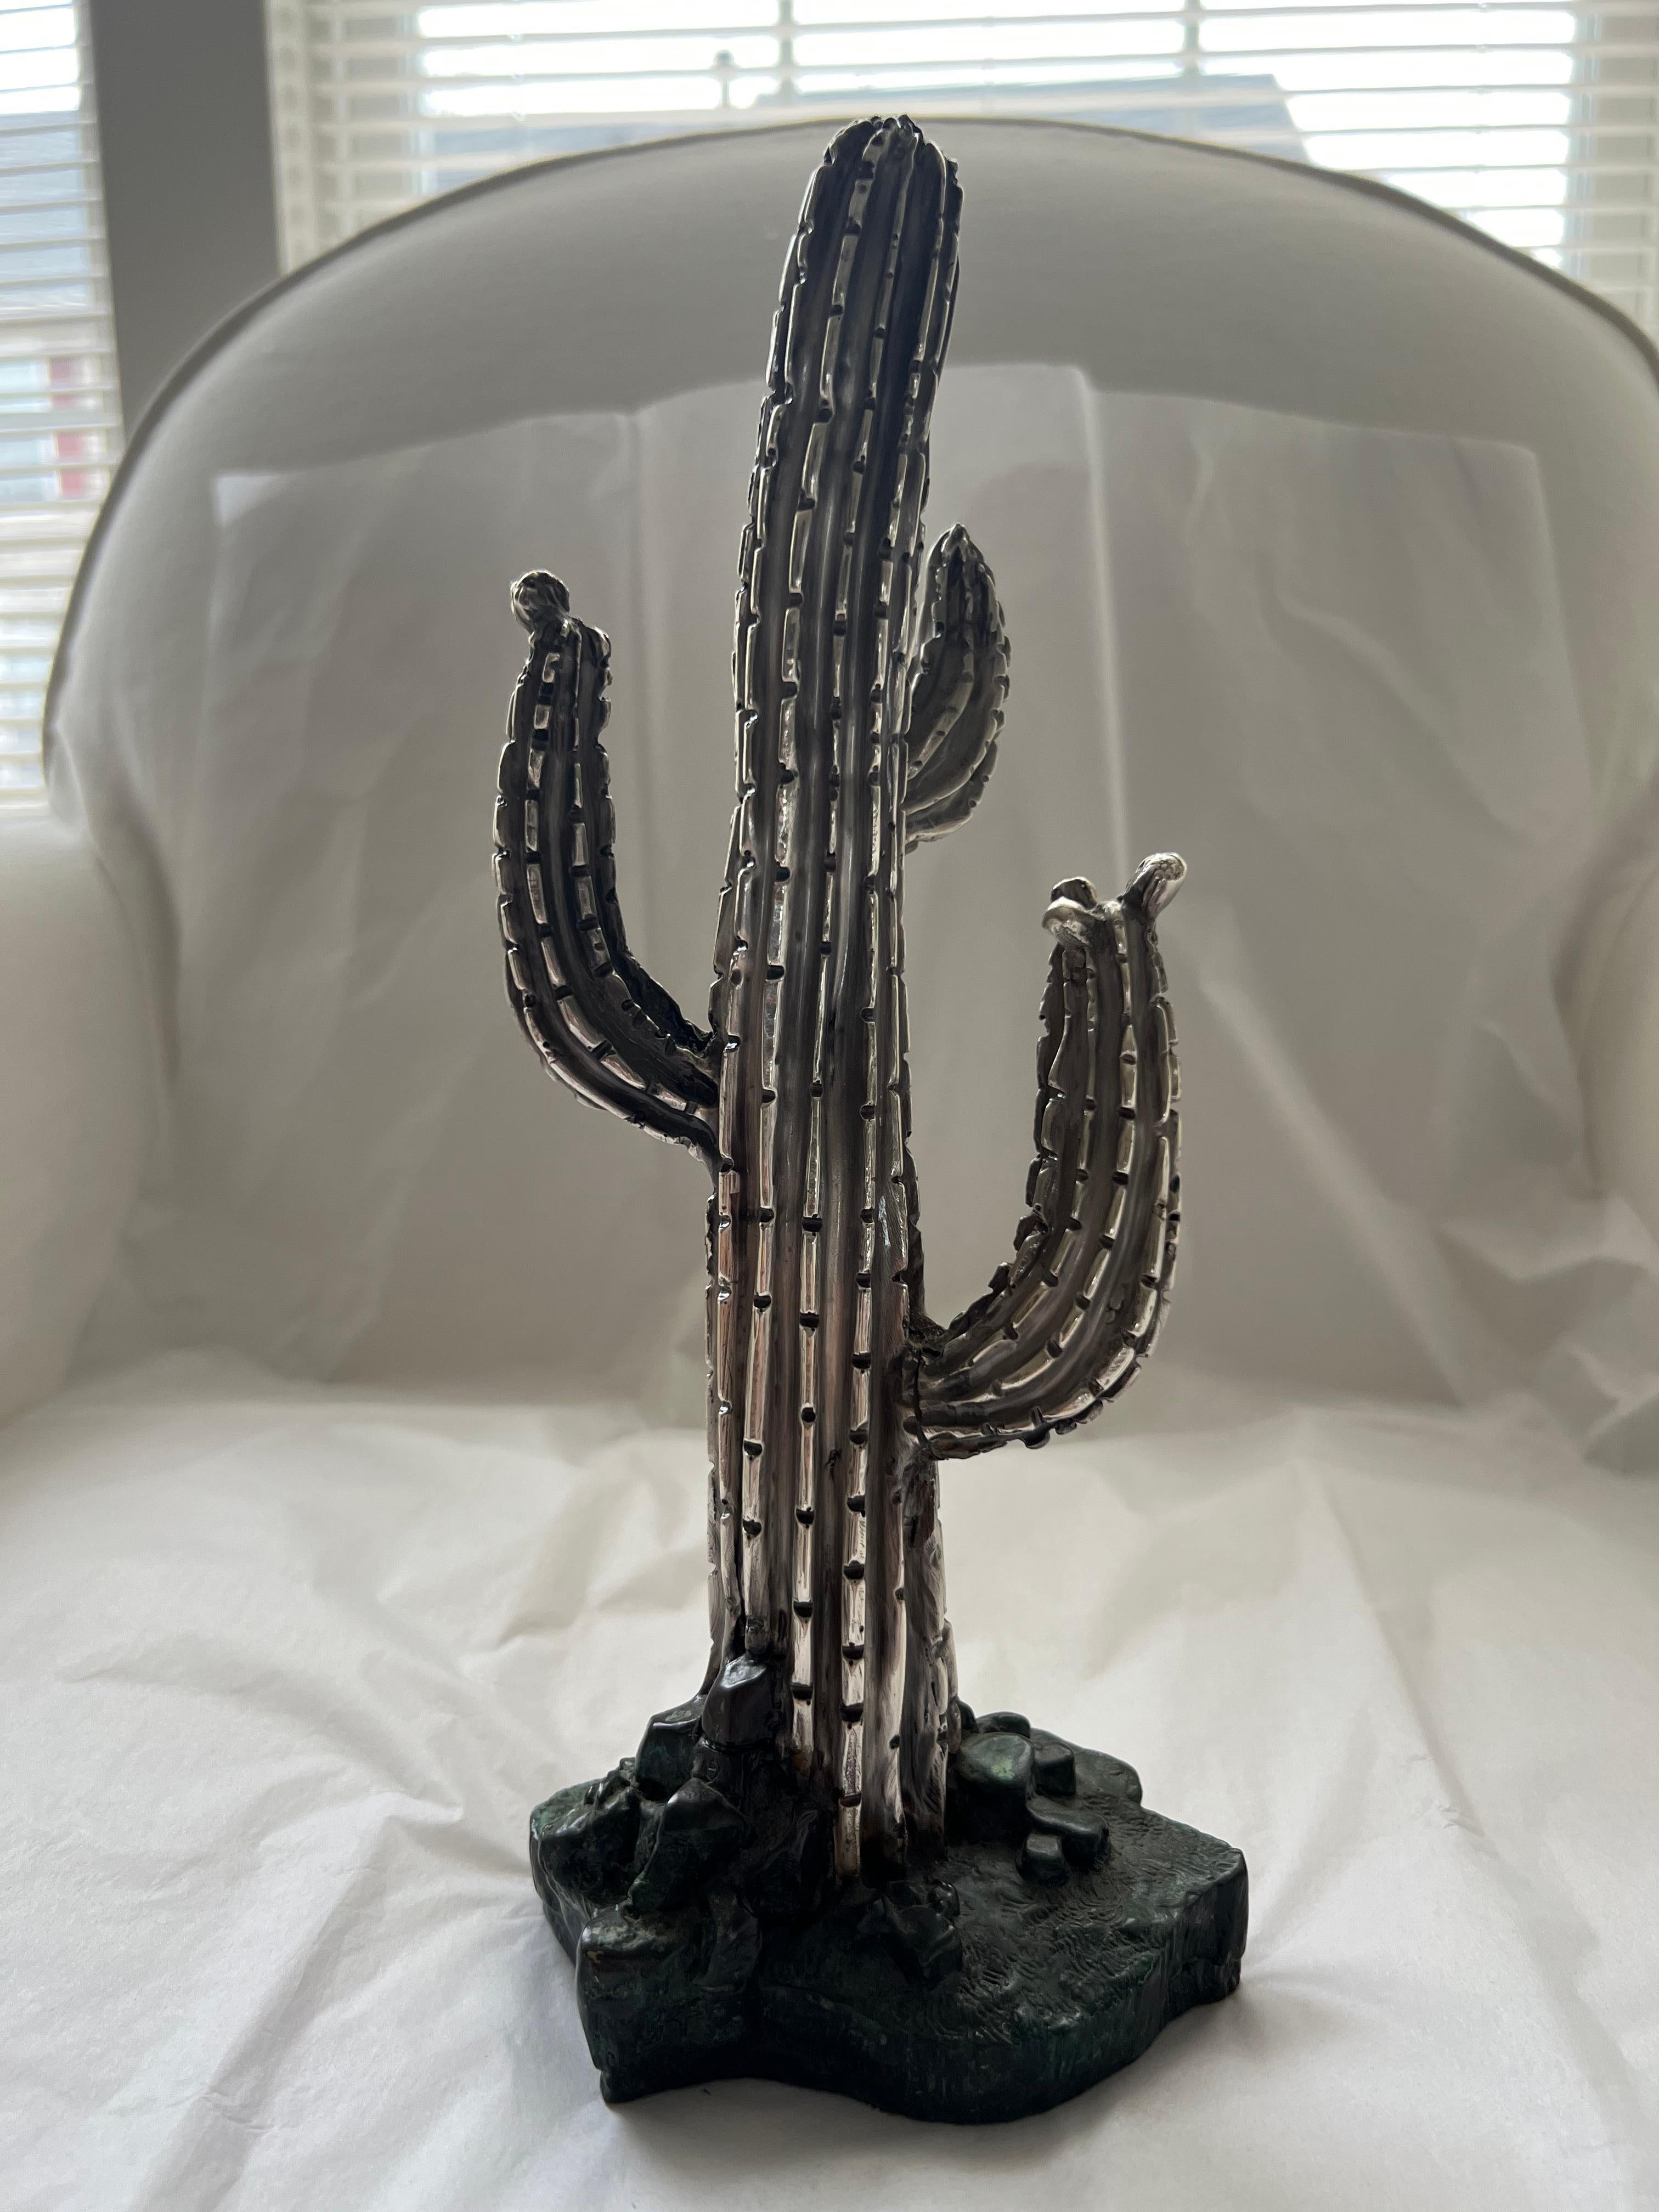 Statue de cactus (1 pounds + 6.2 oz)
